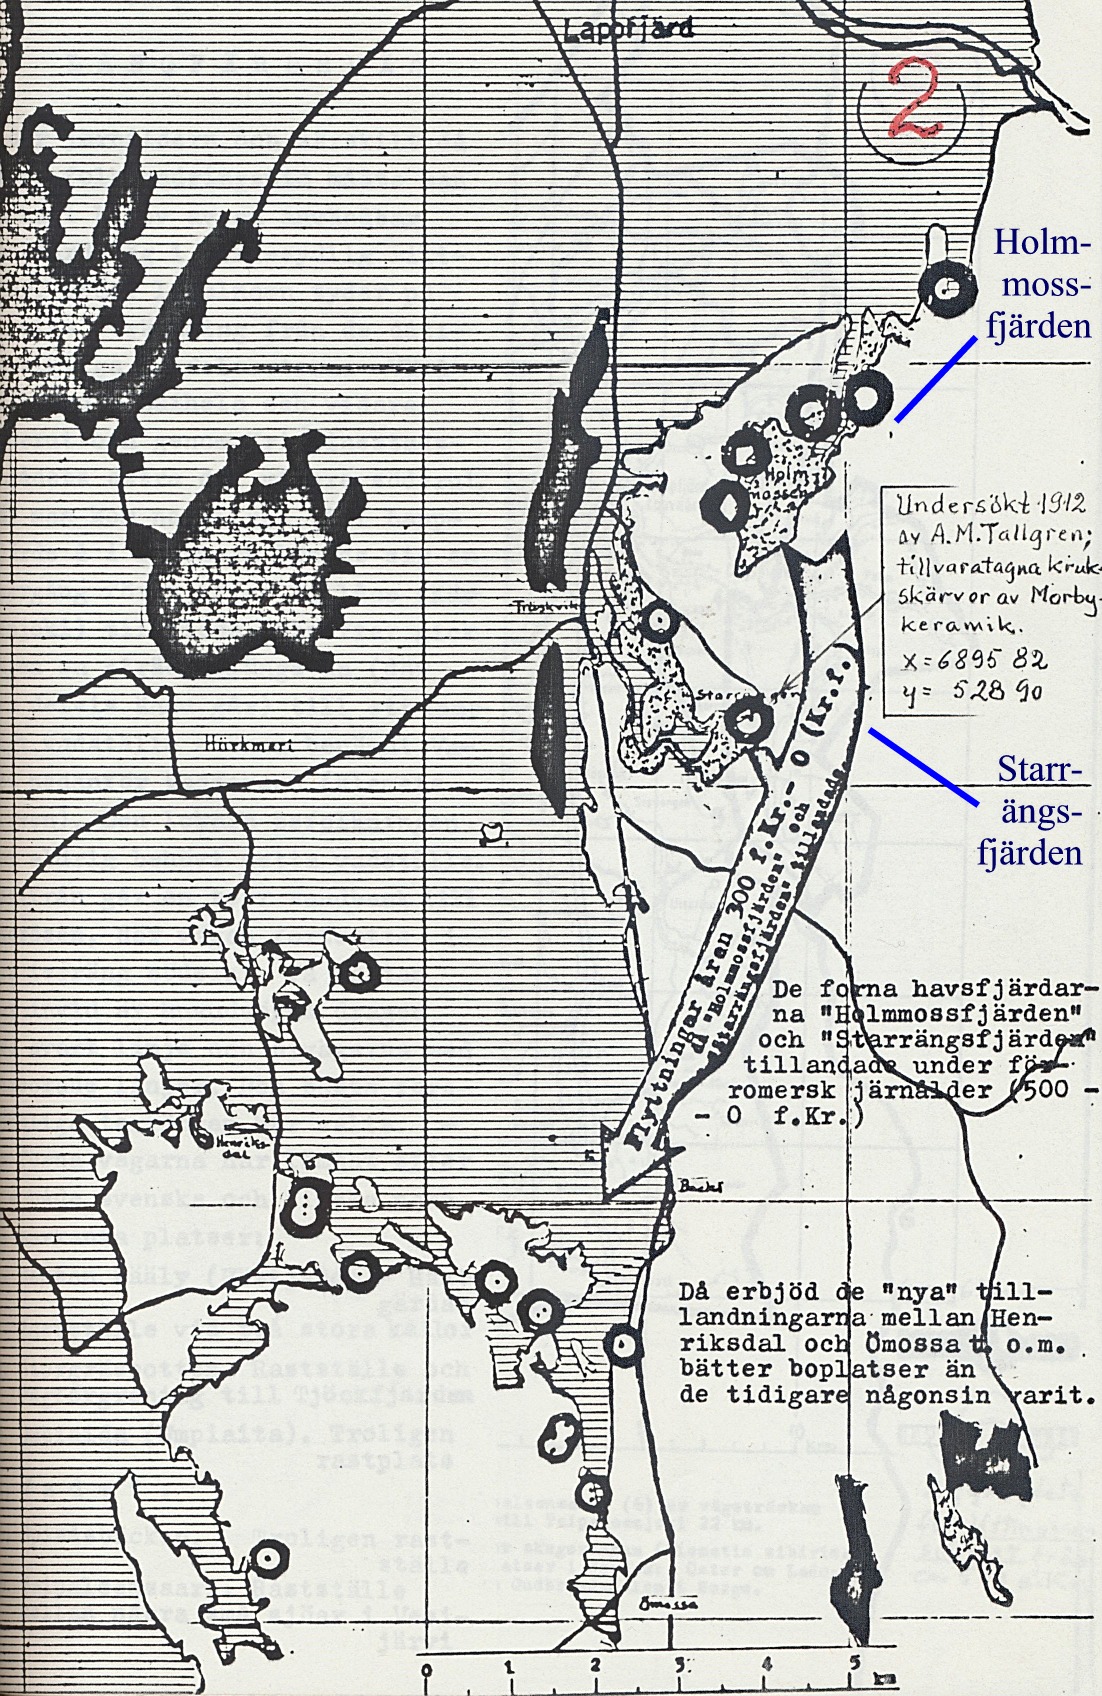 På Rurik Nylunds karta från 500 f. Kr så ser vi att så gott som hela Lappfjärd och Härkmeri täcks av vatten, medan delar av Henriksdal och Ömossa börjar bli synliga. Starrängen och Holmmossen  börjar också torka ut.